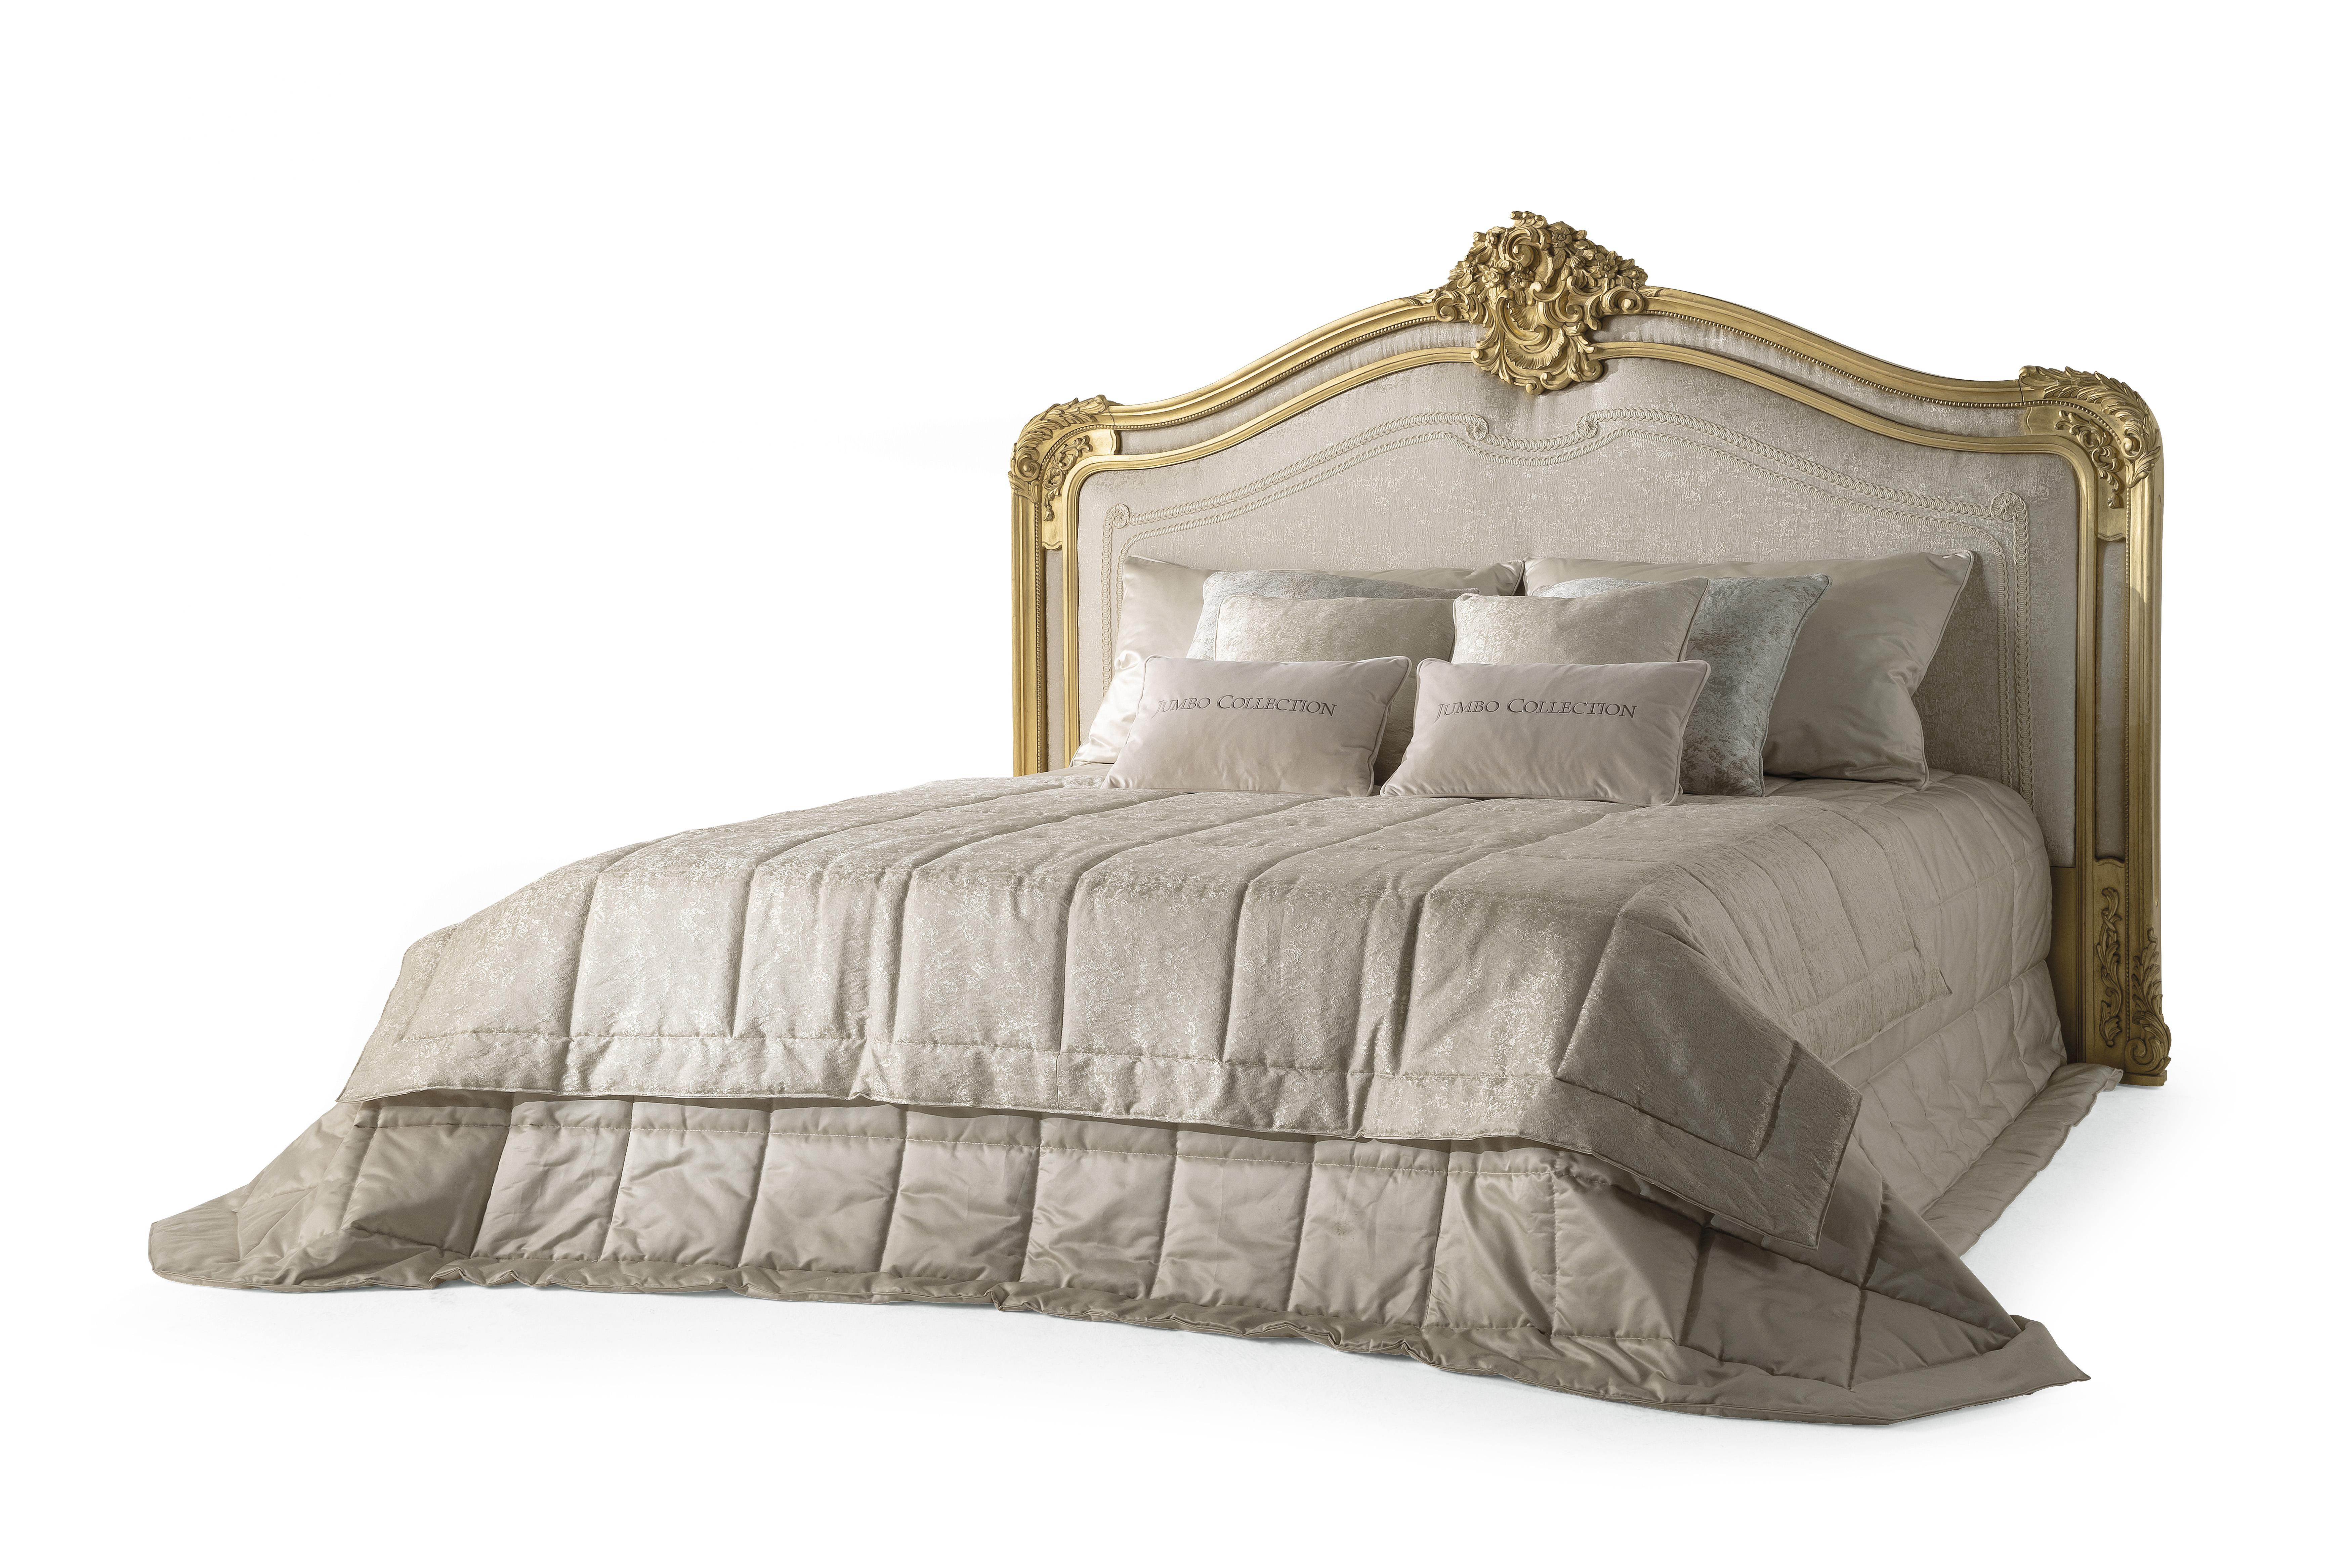 Chaine est un lit classique de style français qui exprime parfaitement l'héritage de la marque Jumbo Collectional, dans laquelle l'attention aux détails, l'artisanat et les matériaux précieux prévalent. La somptueuse tête de lit en bois de hêtre